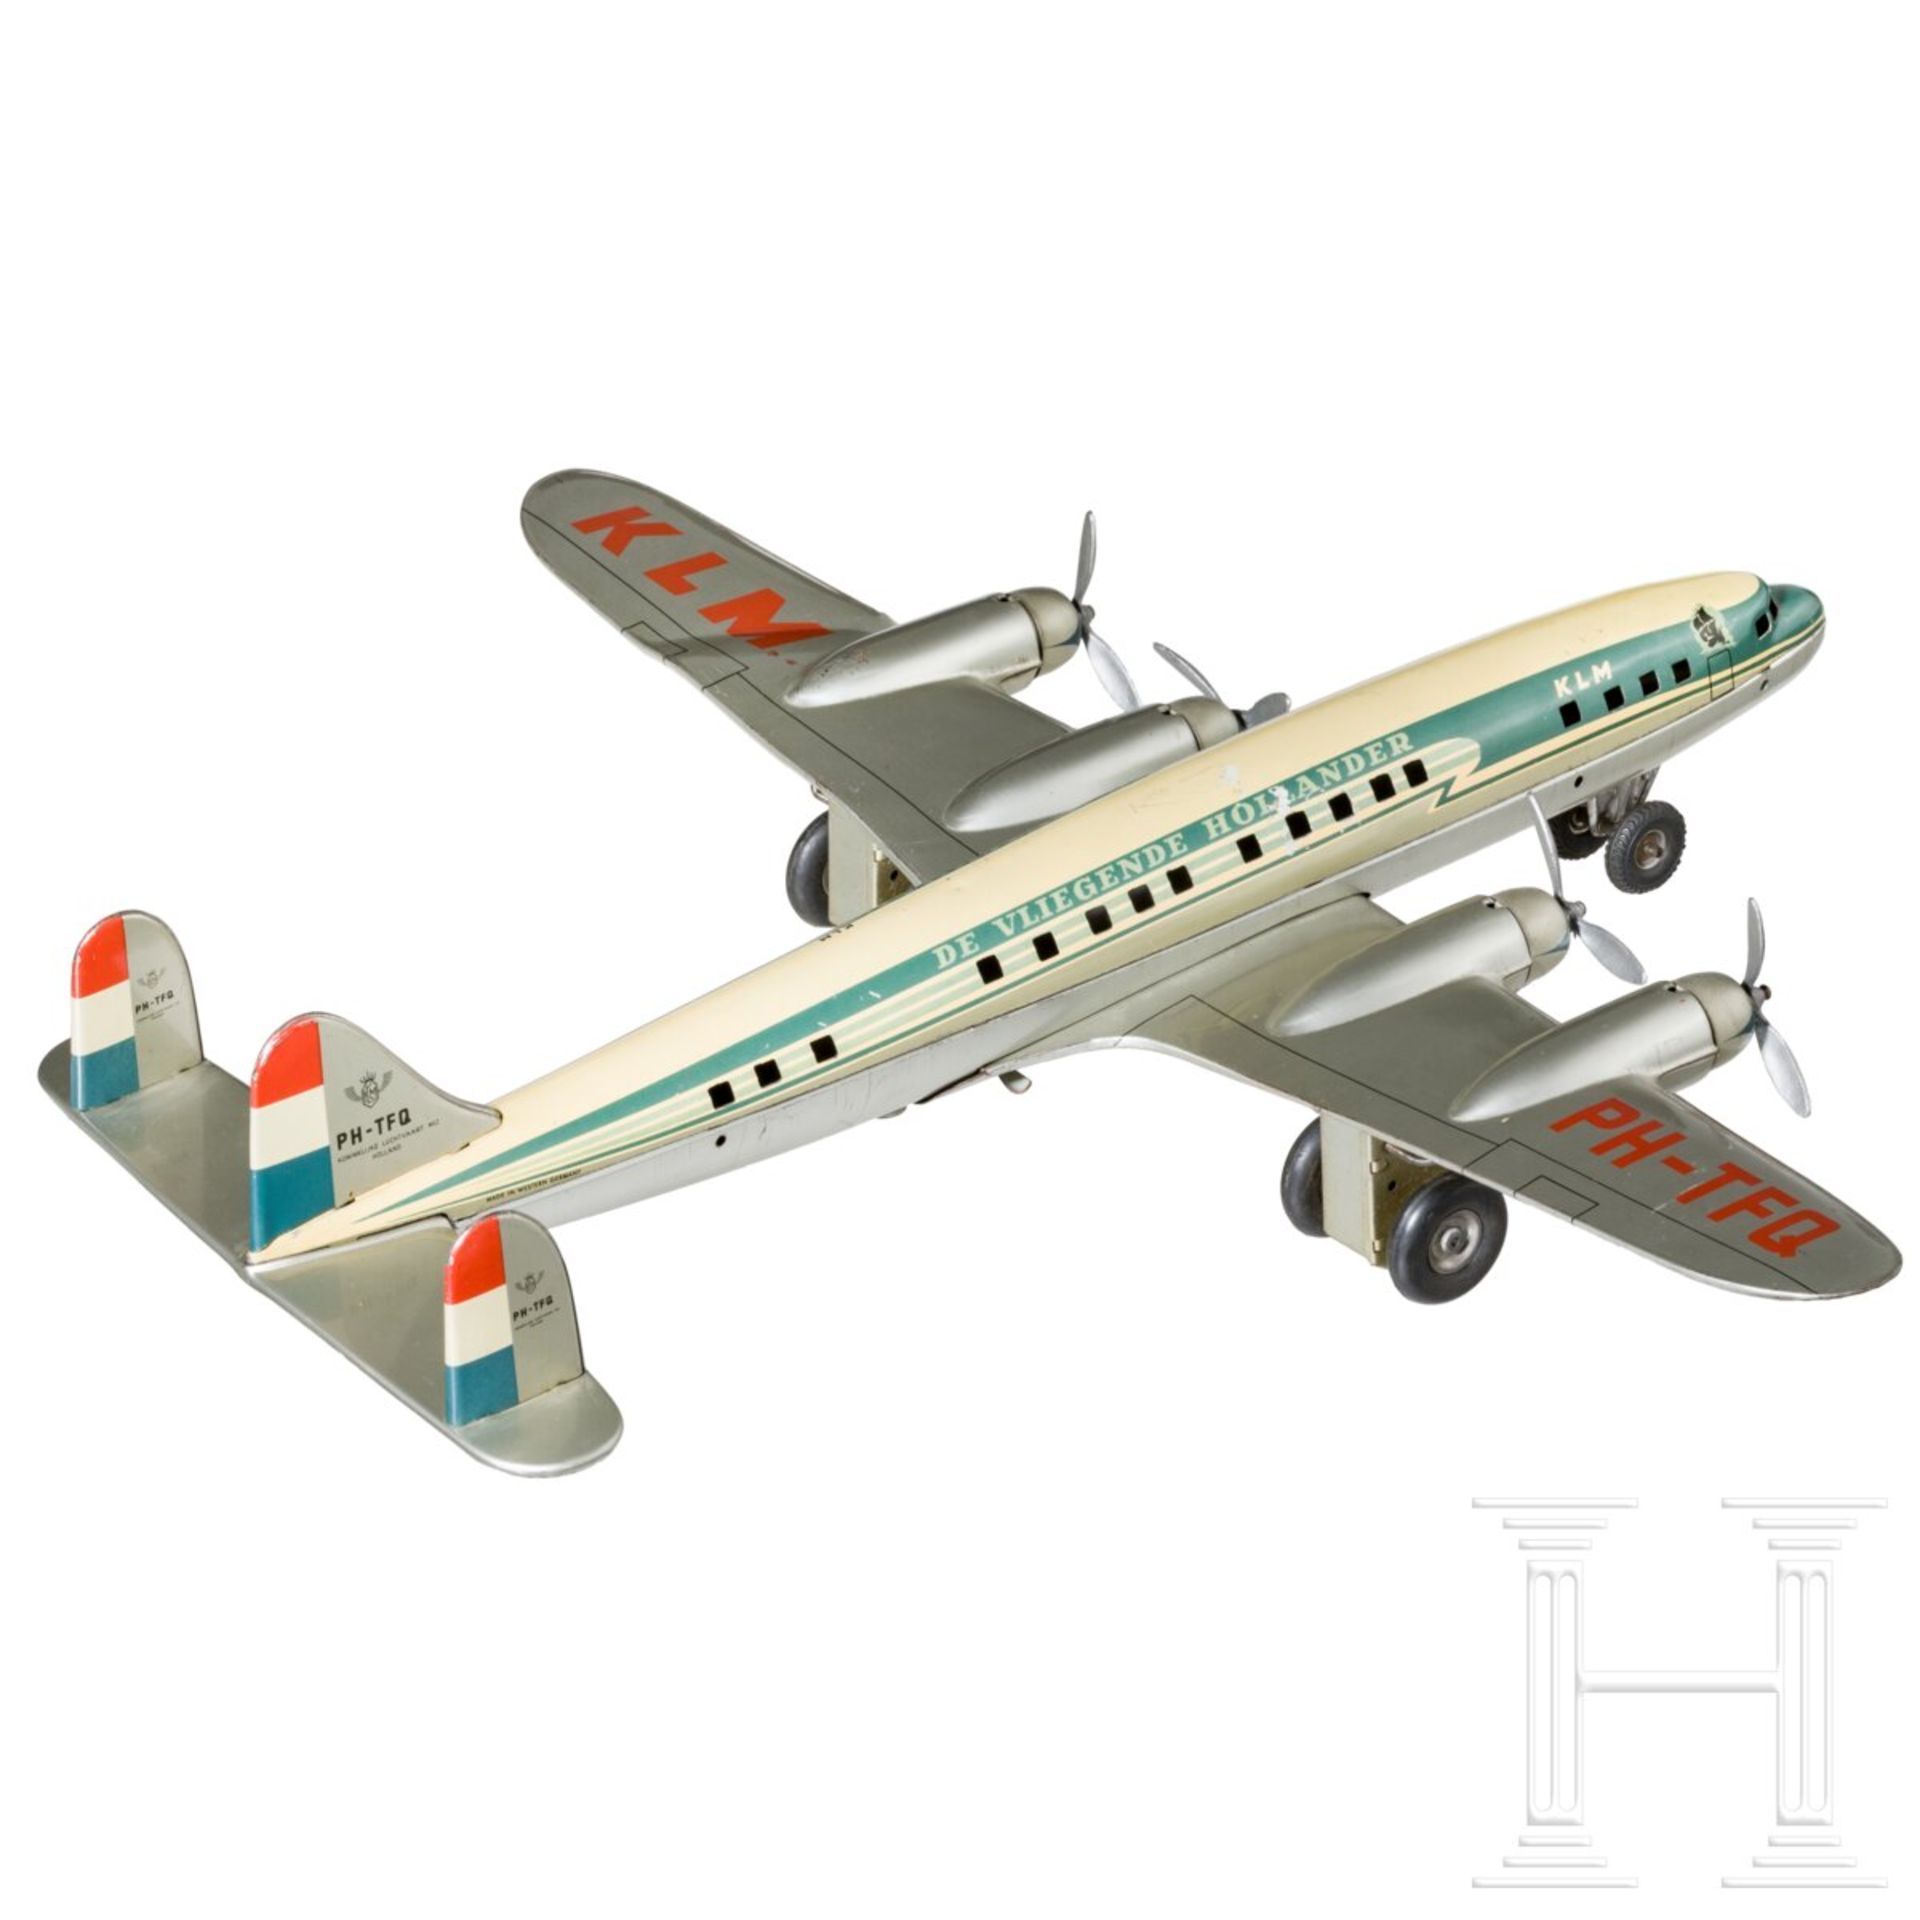 TippCo Flugzeug der KLM "The Flying Dutchman" mit Positionslampen - Bild 2 aus 5